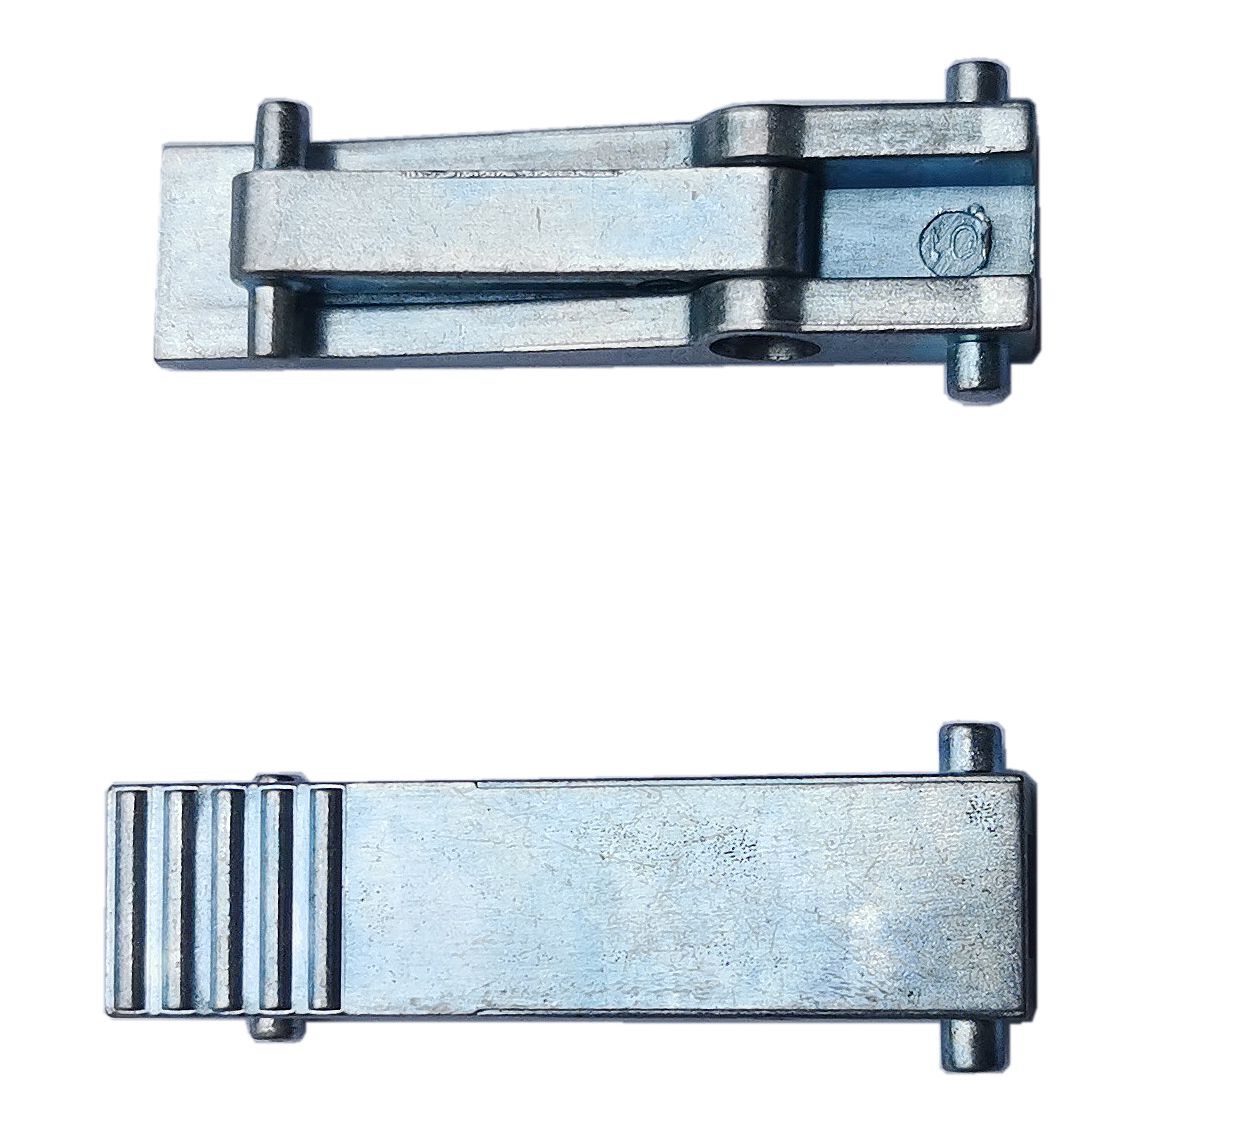 Zinc automatic door lock, sliding window switch strip lock, zinc alloy die-casting accessories, door and window hardware accessories, mechanical door hook lock